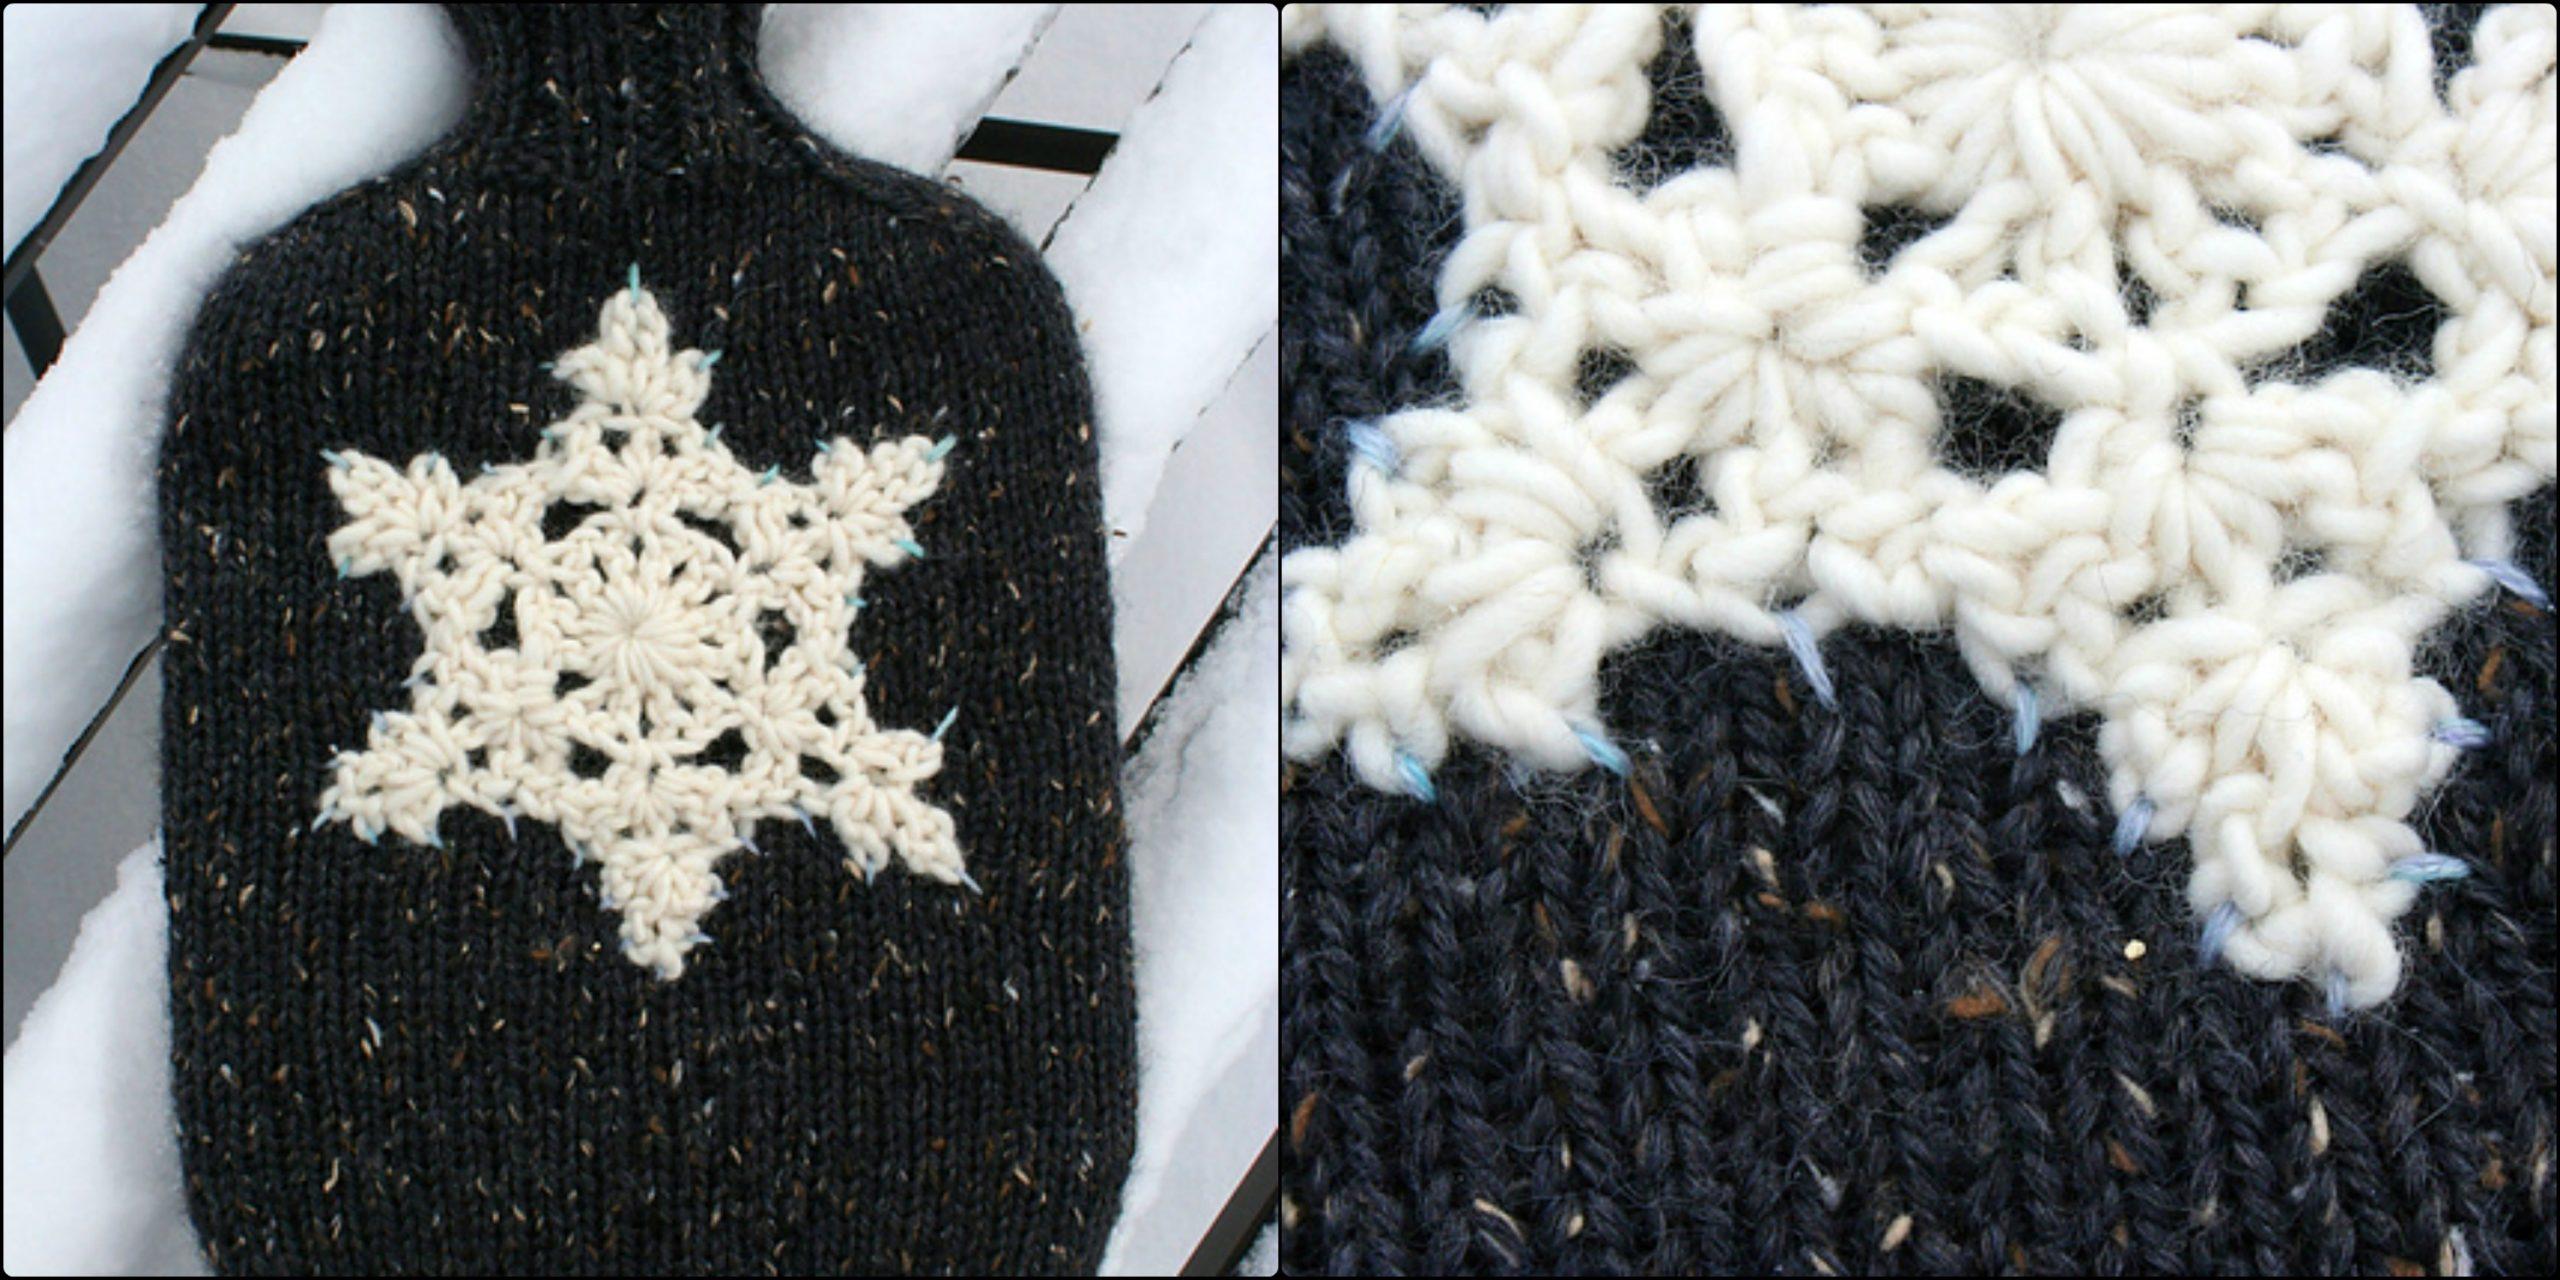 Hottie with crochet motif